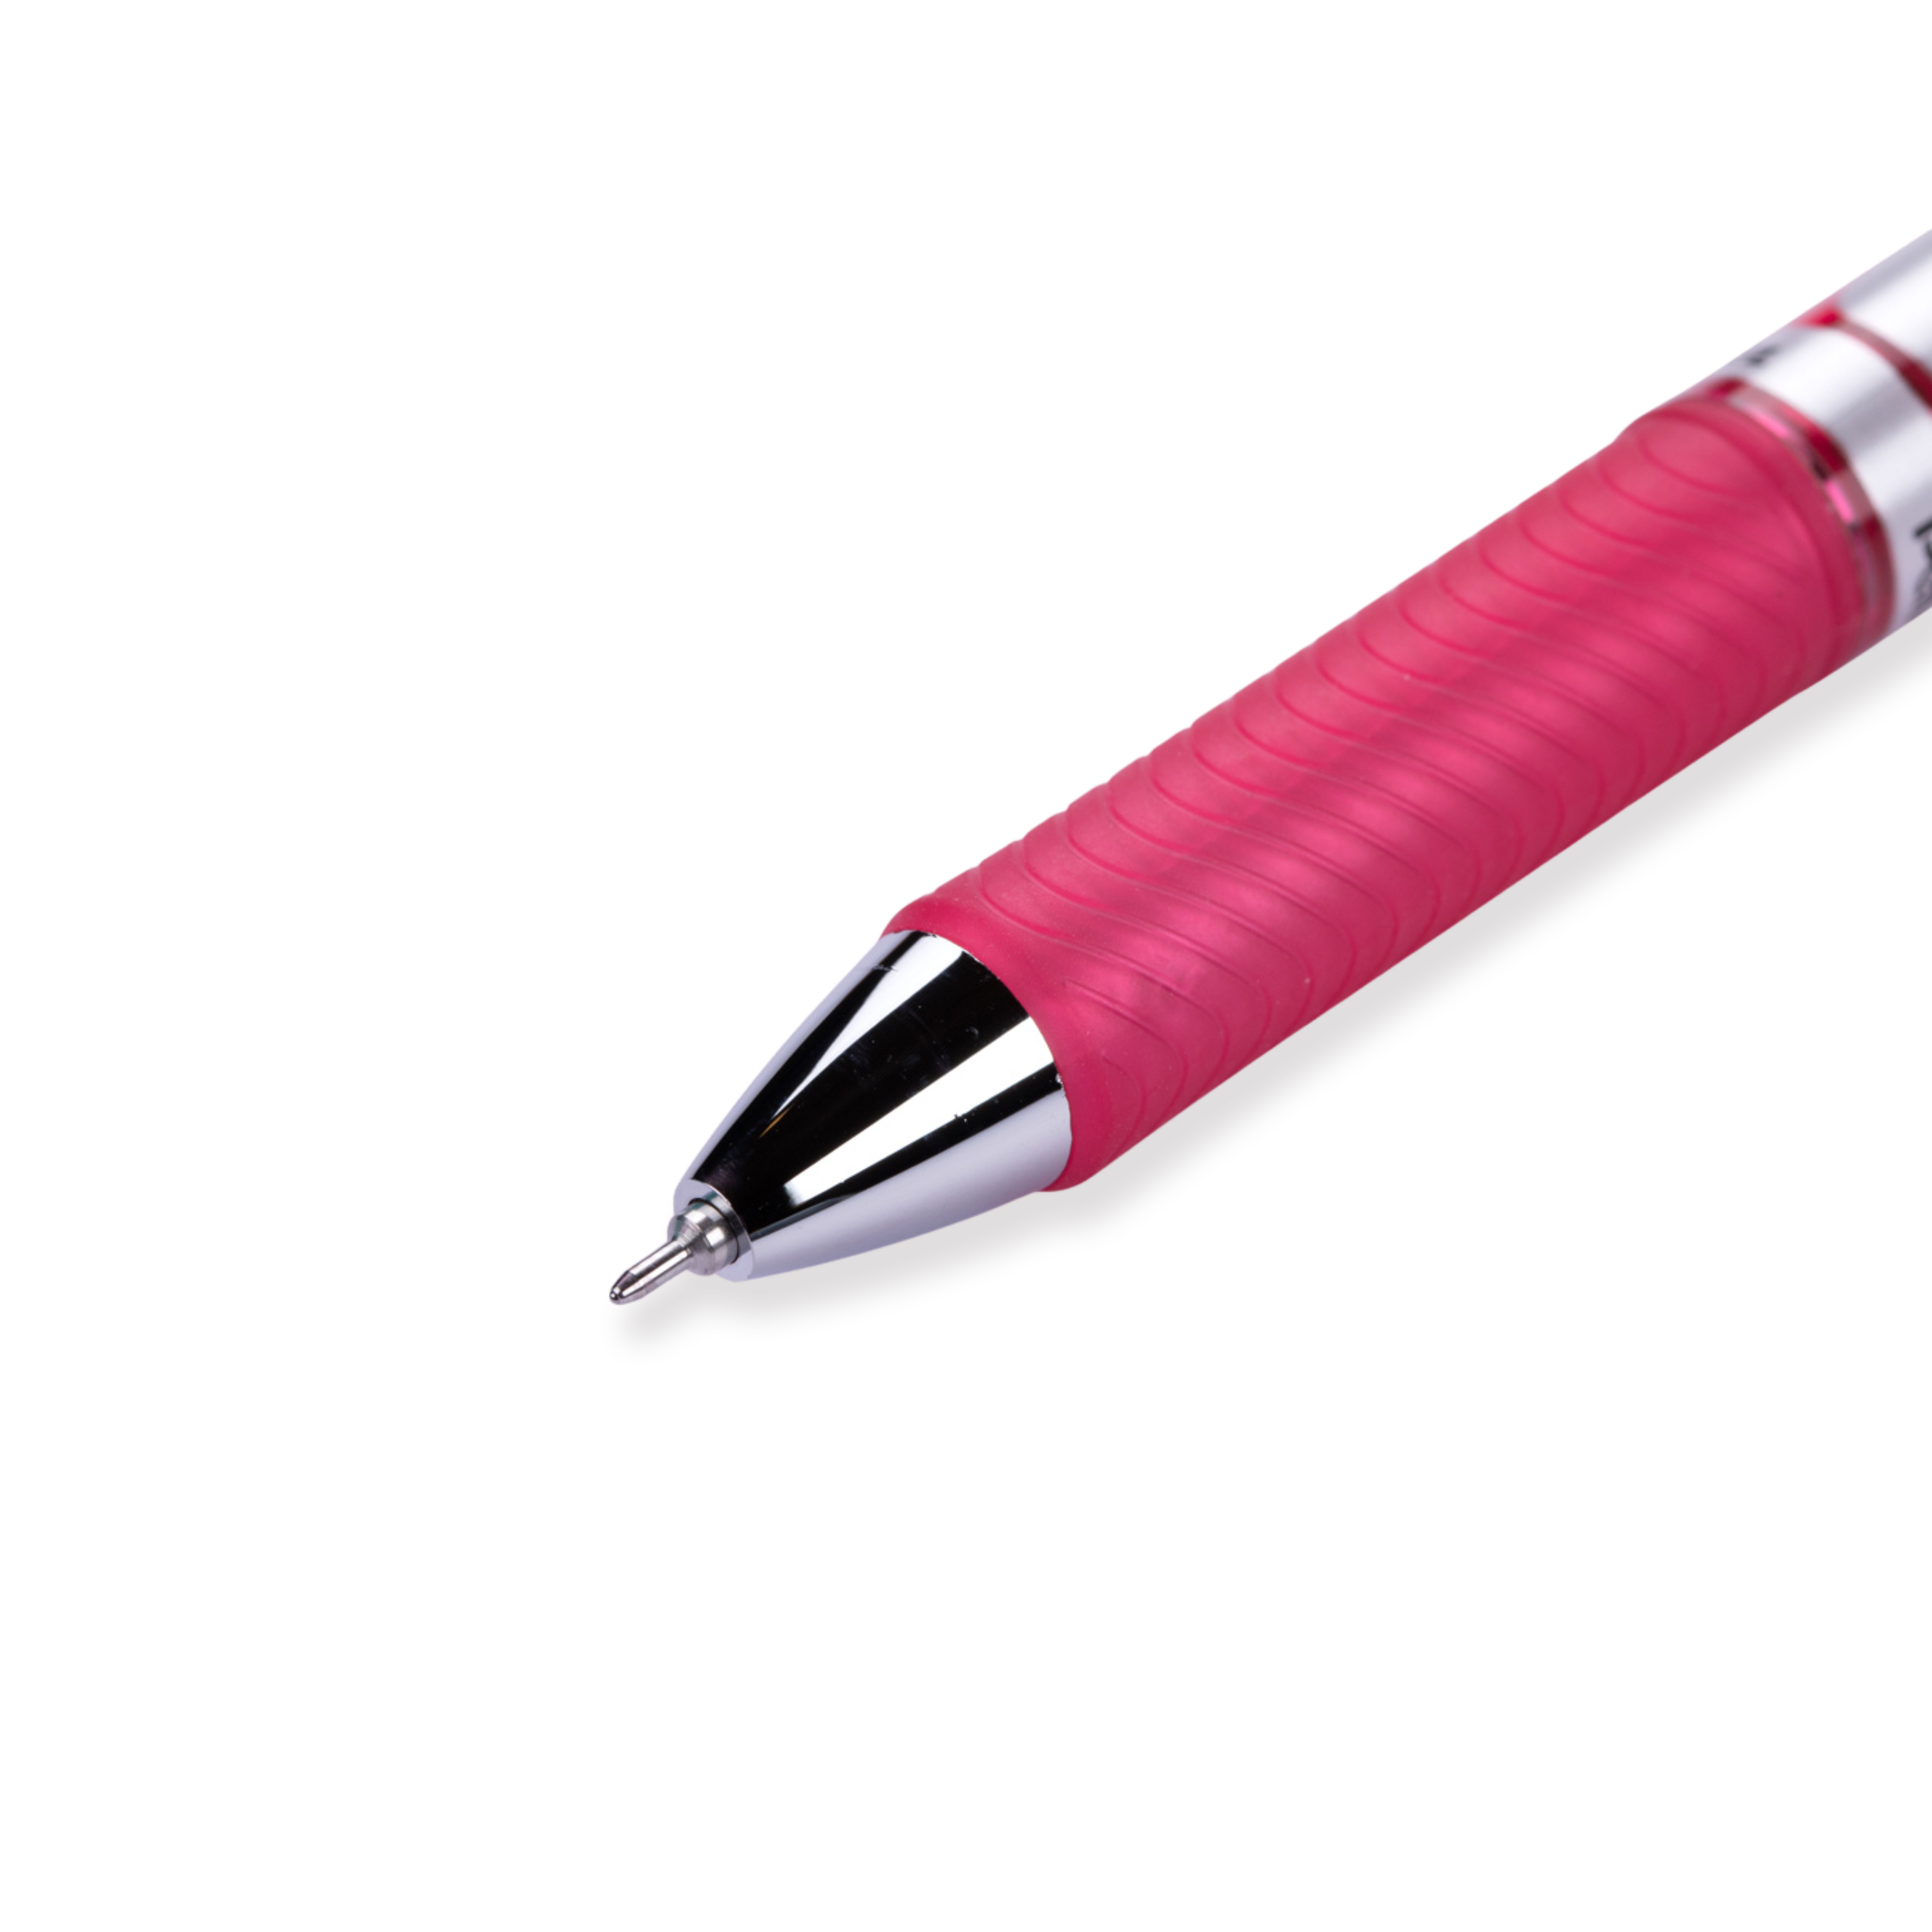 Pentel EnerGel RTX Gel Pen - Needle - 0.5 mm - Pink